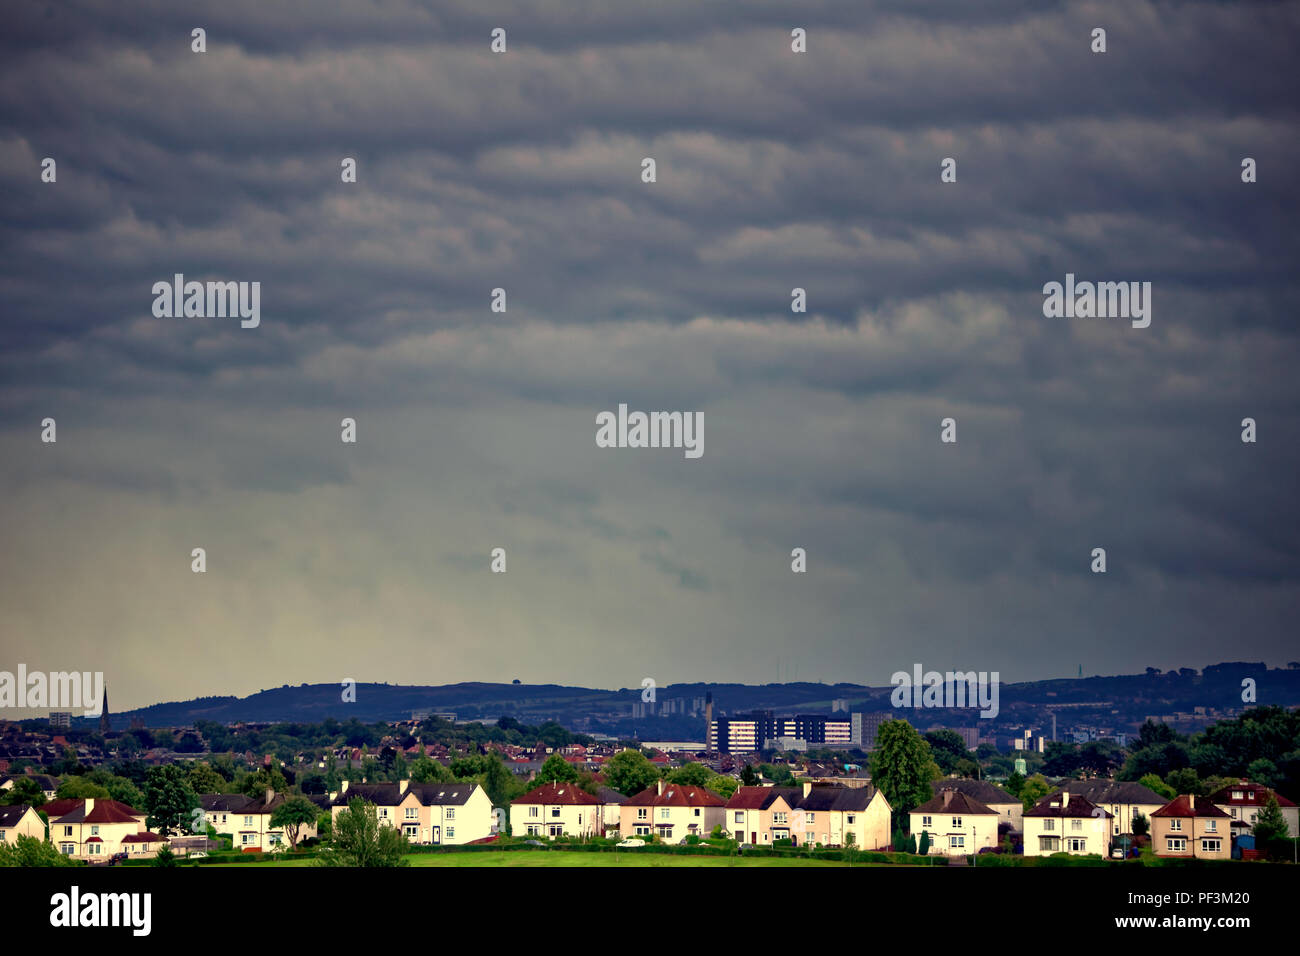 Panorama del sureste de Glasgow con knightswood en primer plano y el west end con Cambuslang Yorkhill hospital con colinas y parte trasera Foto de stock